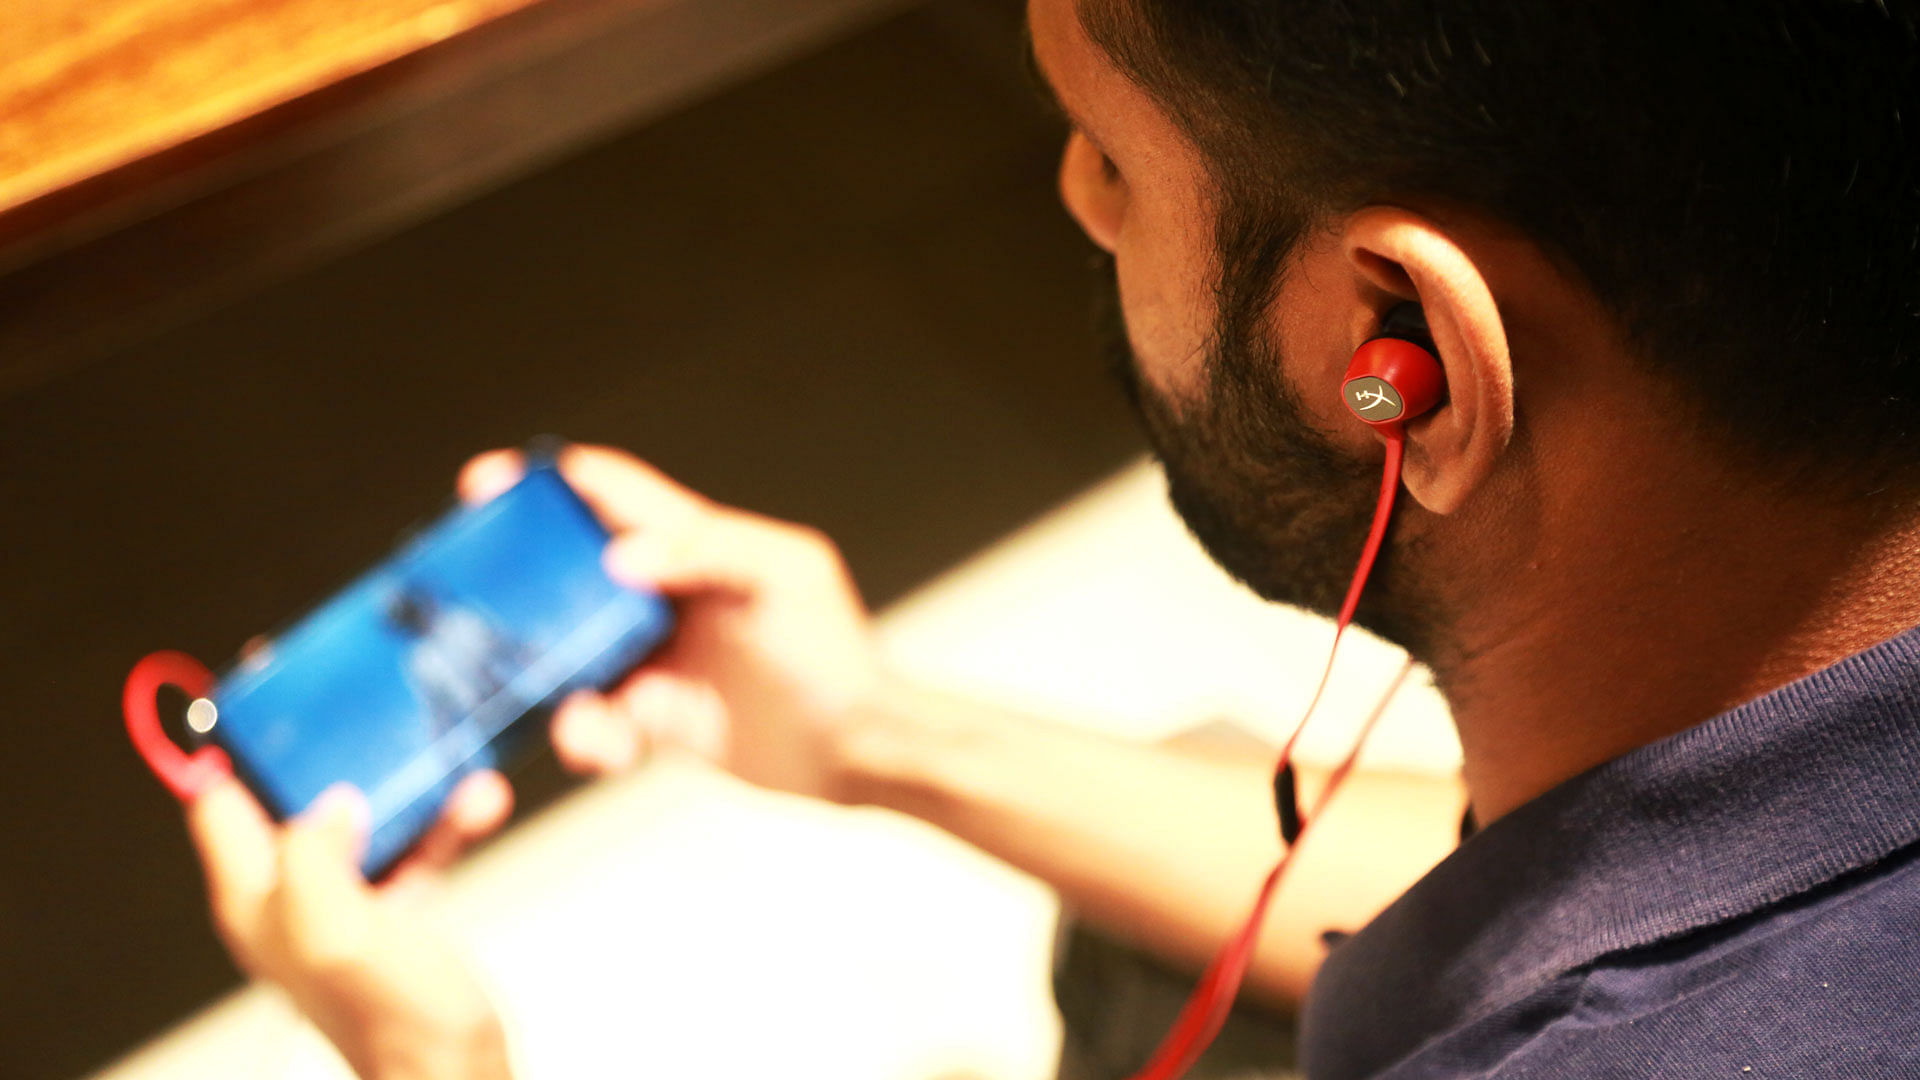 The HyperX Cloud headphones are pro gaming earphones.